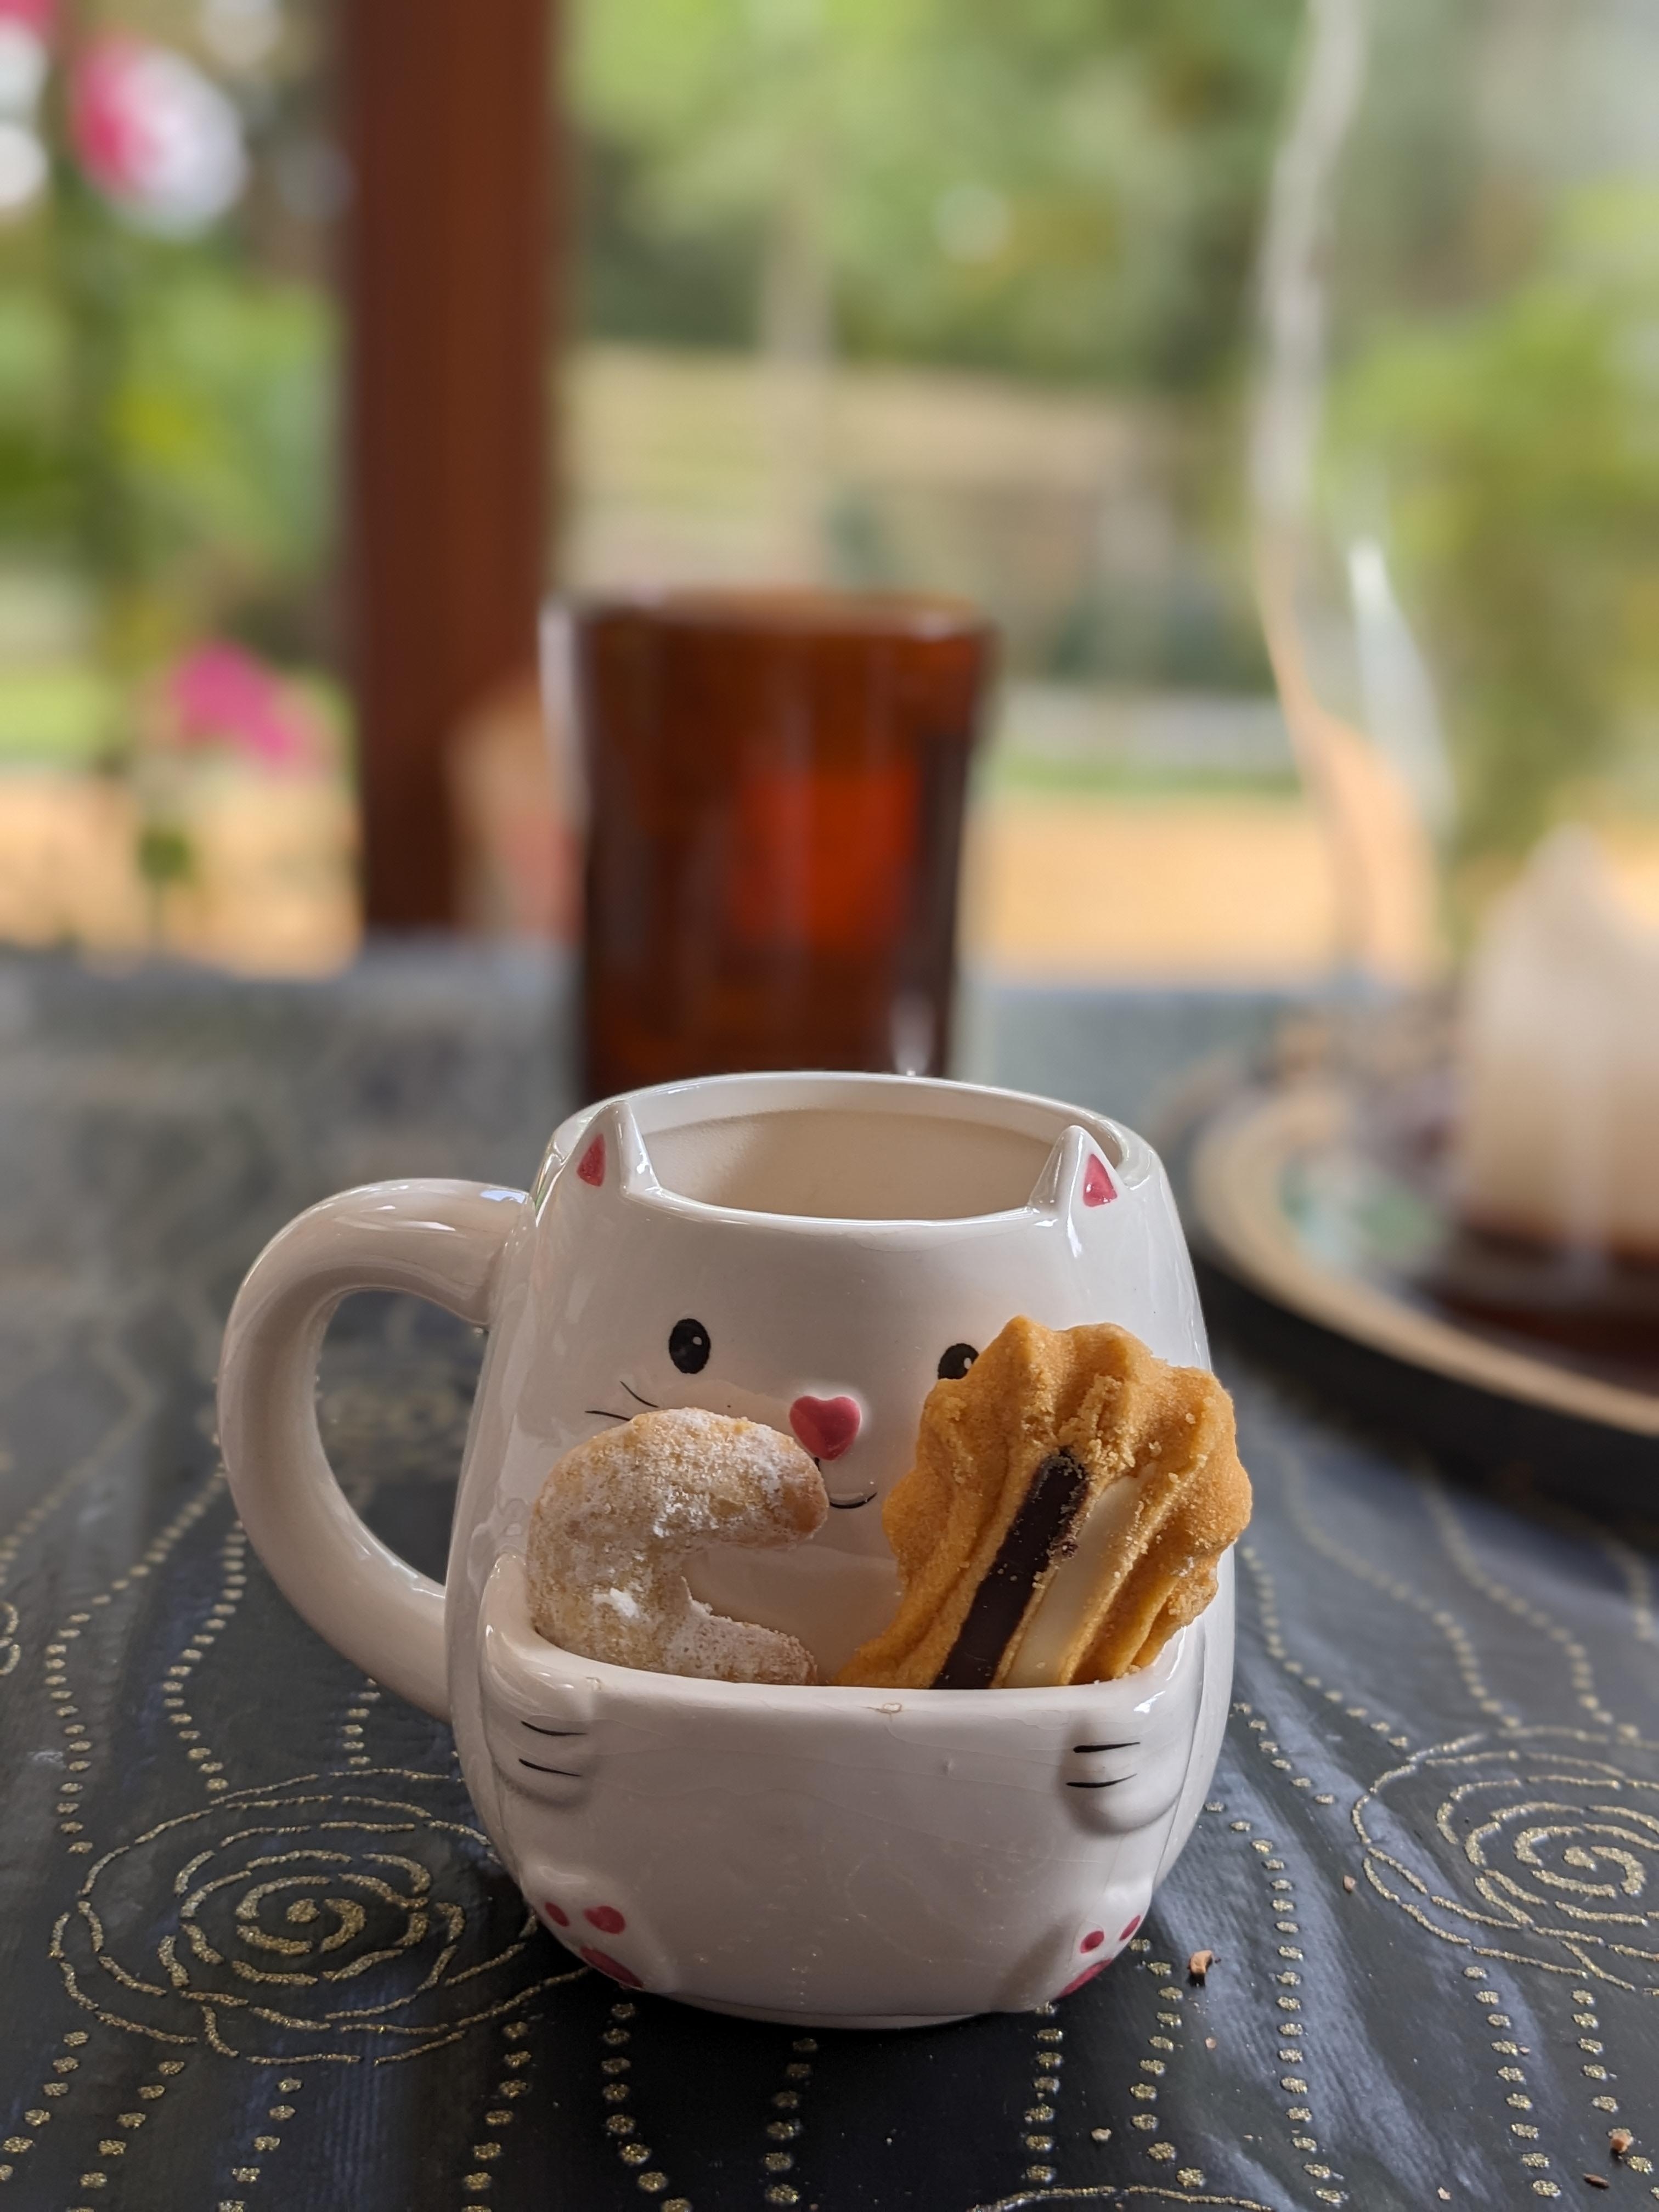 Schöne Tasse mit Vanillekipferl.😊🎄🍪

#kaffee #tasse #kekse #backen #weihnachten #keksebacken